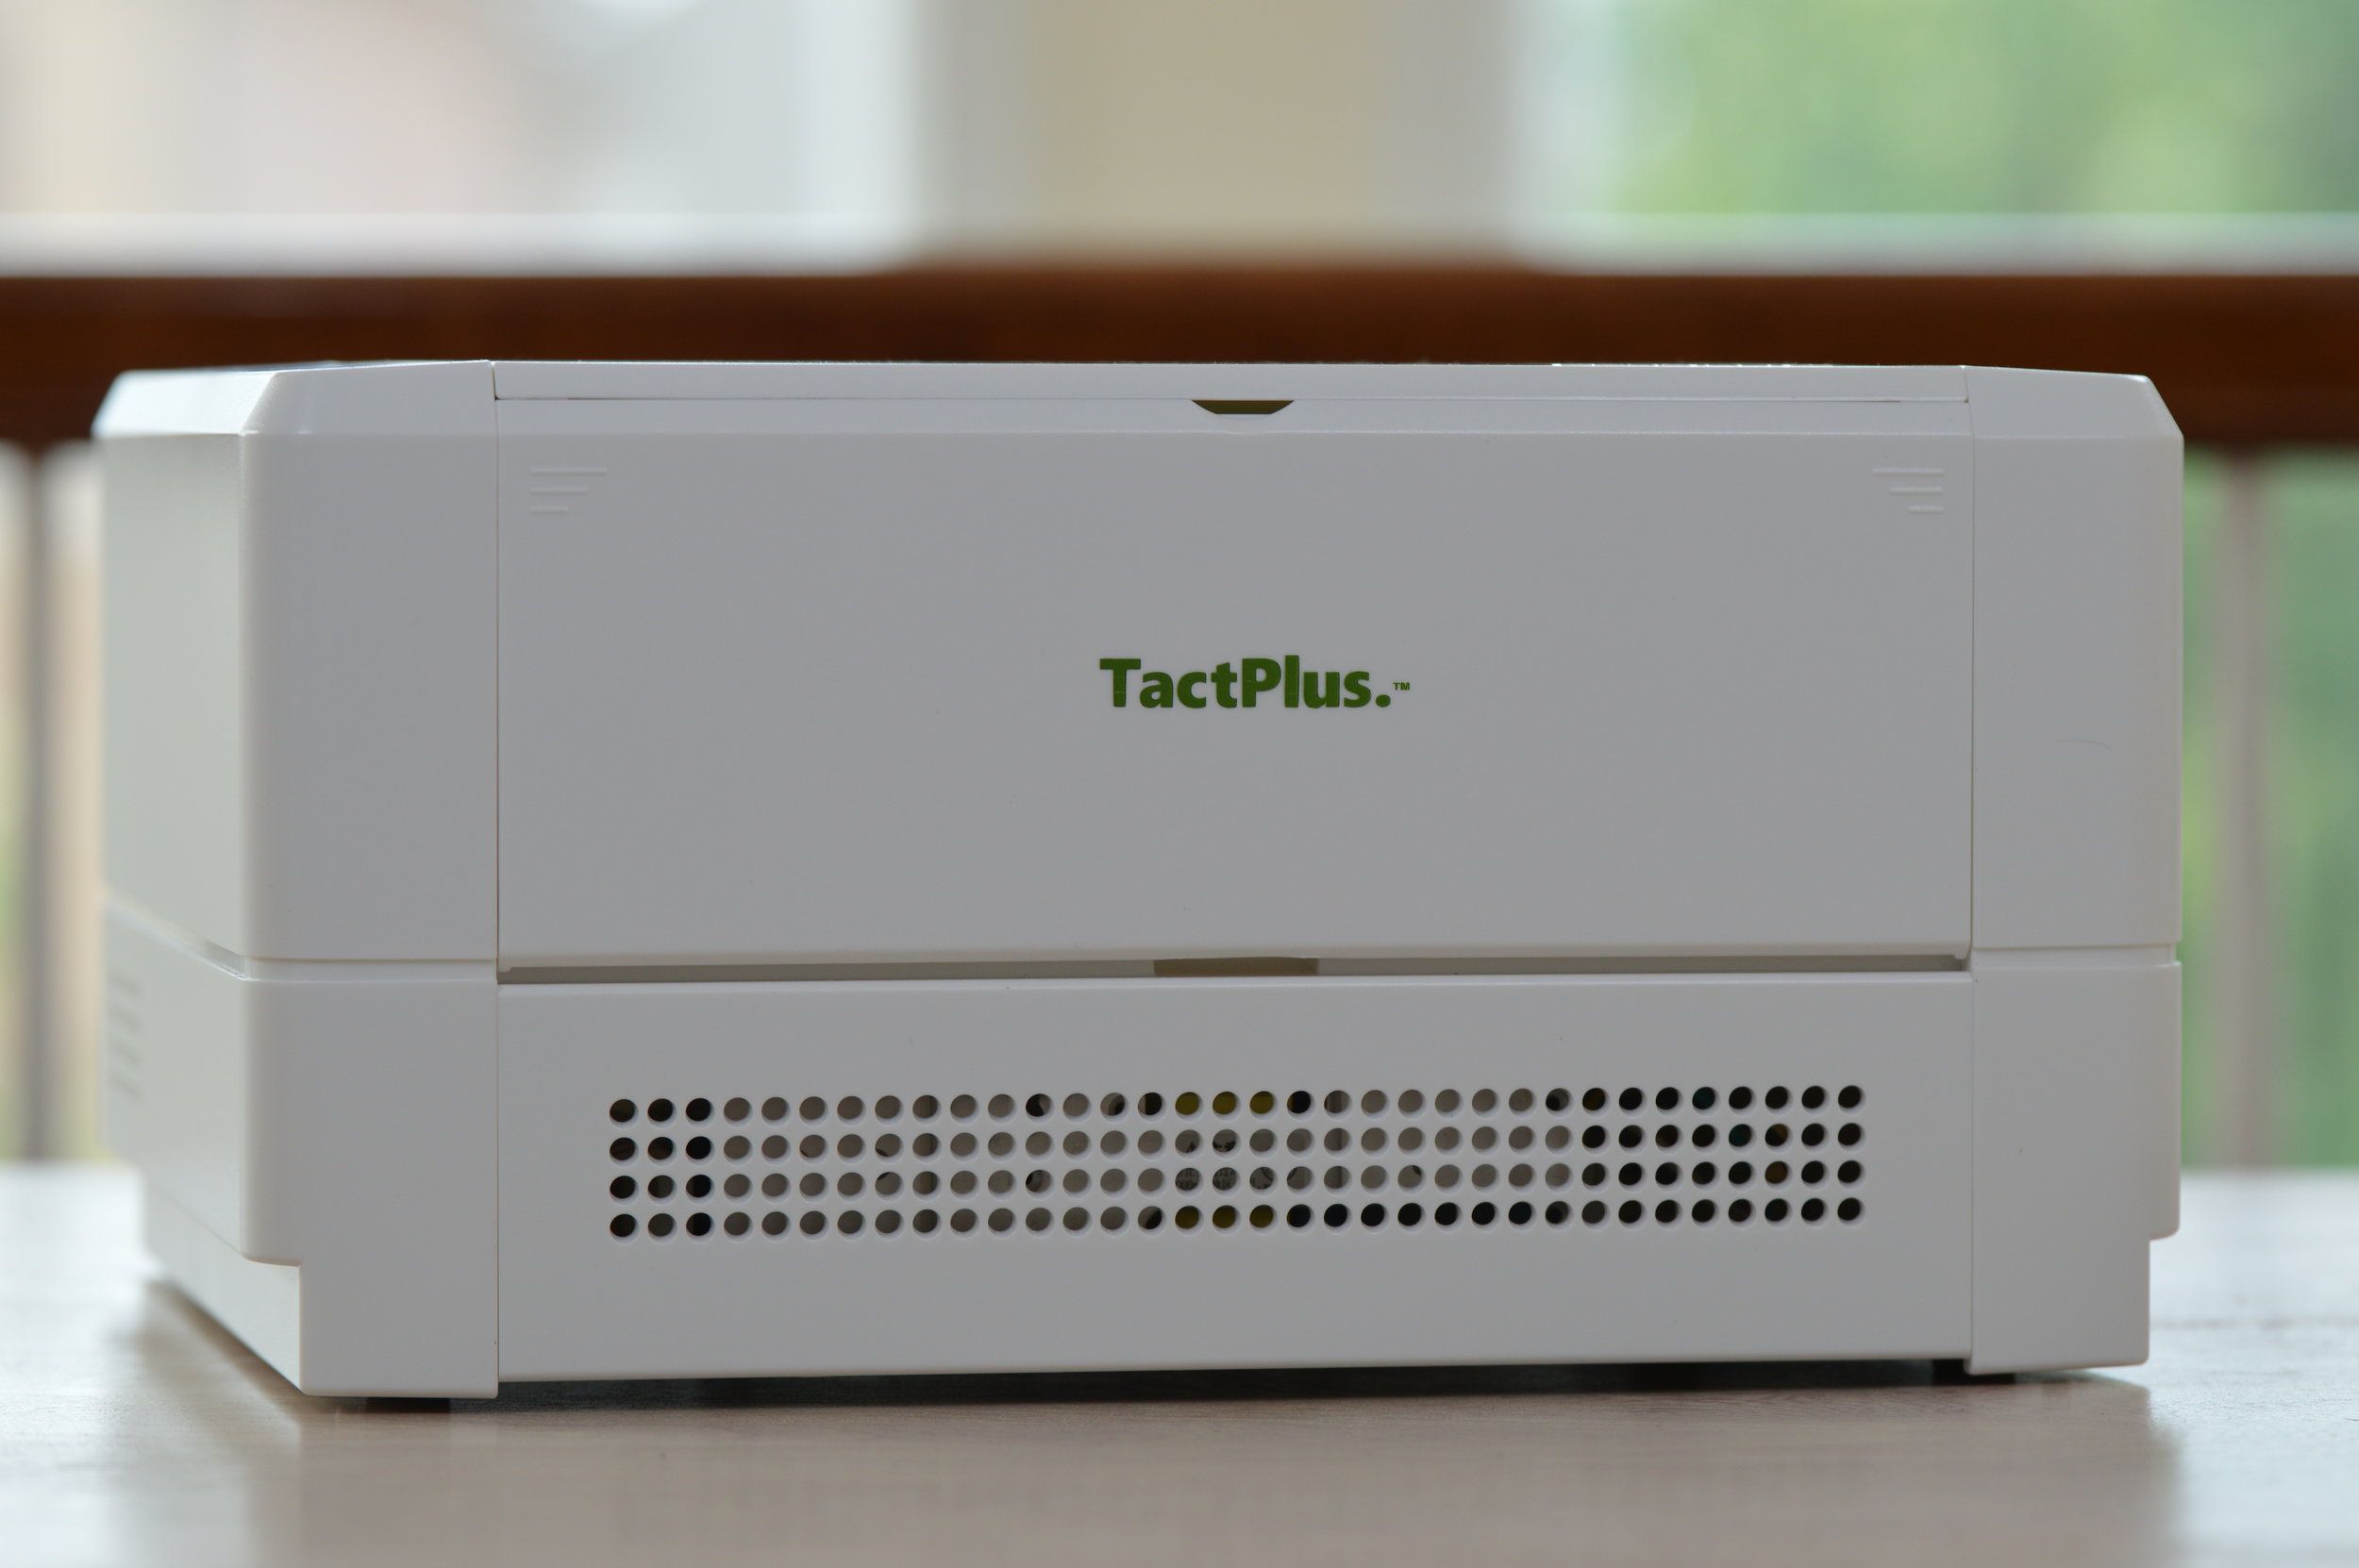 TactPlus Tactile Printer